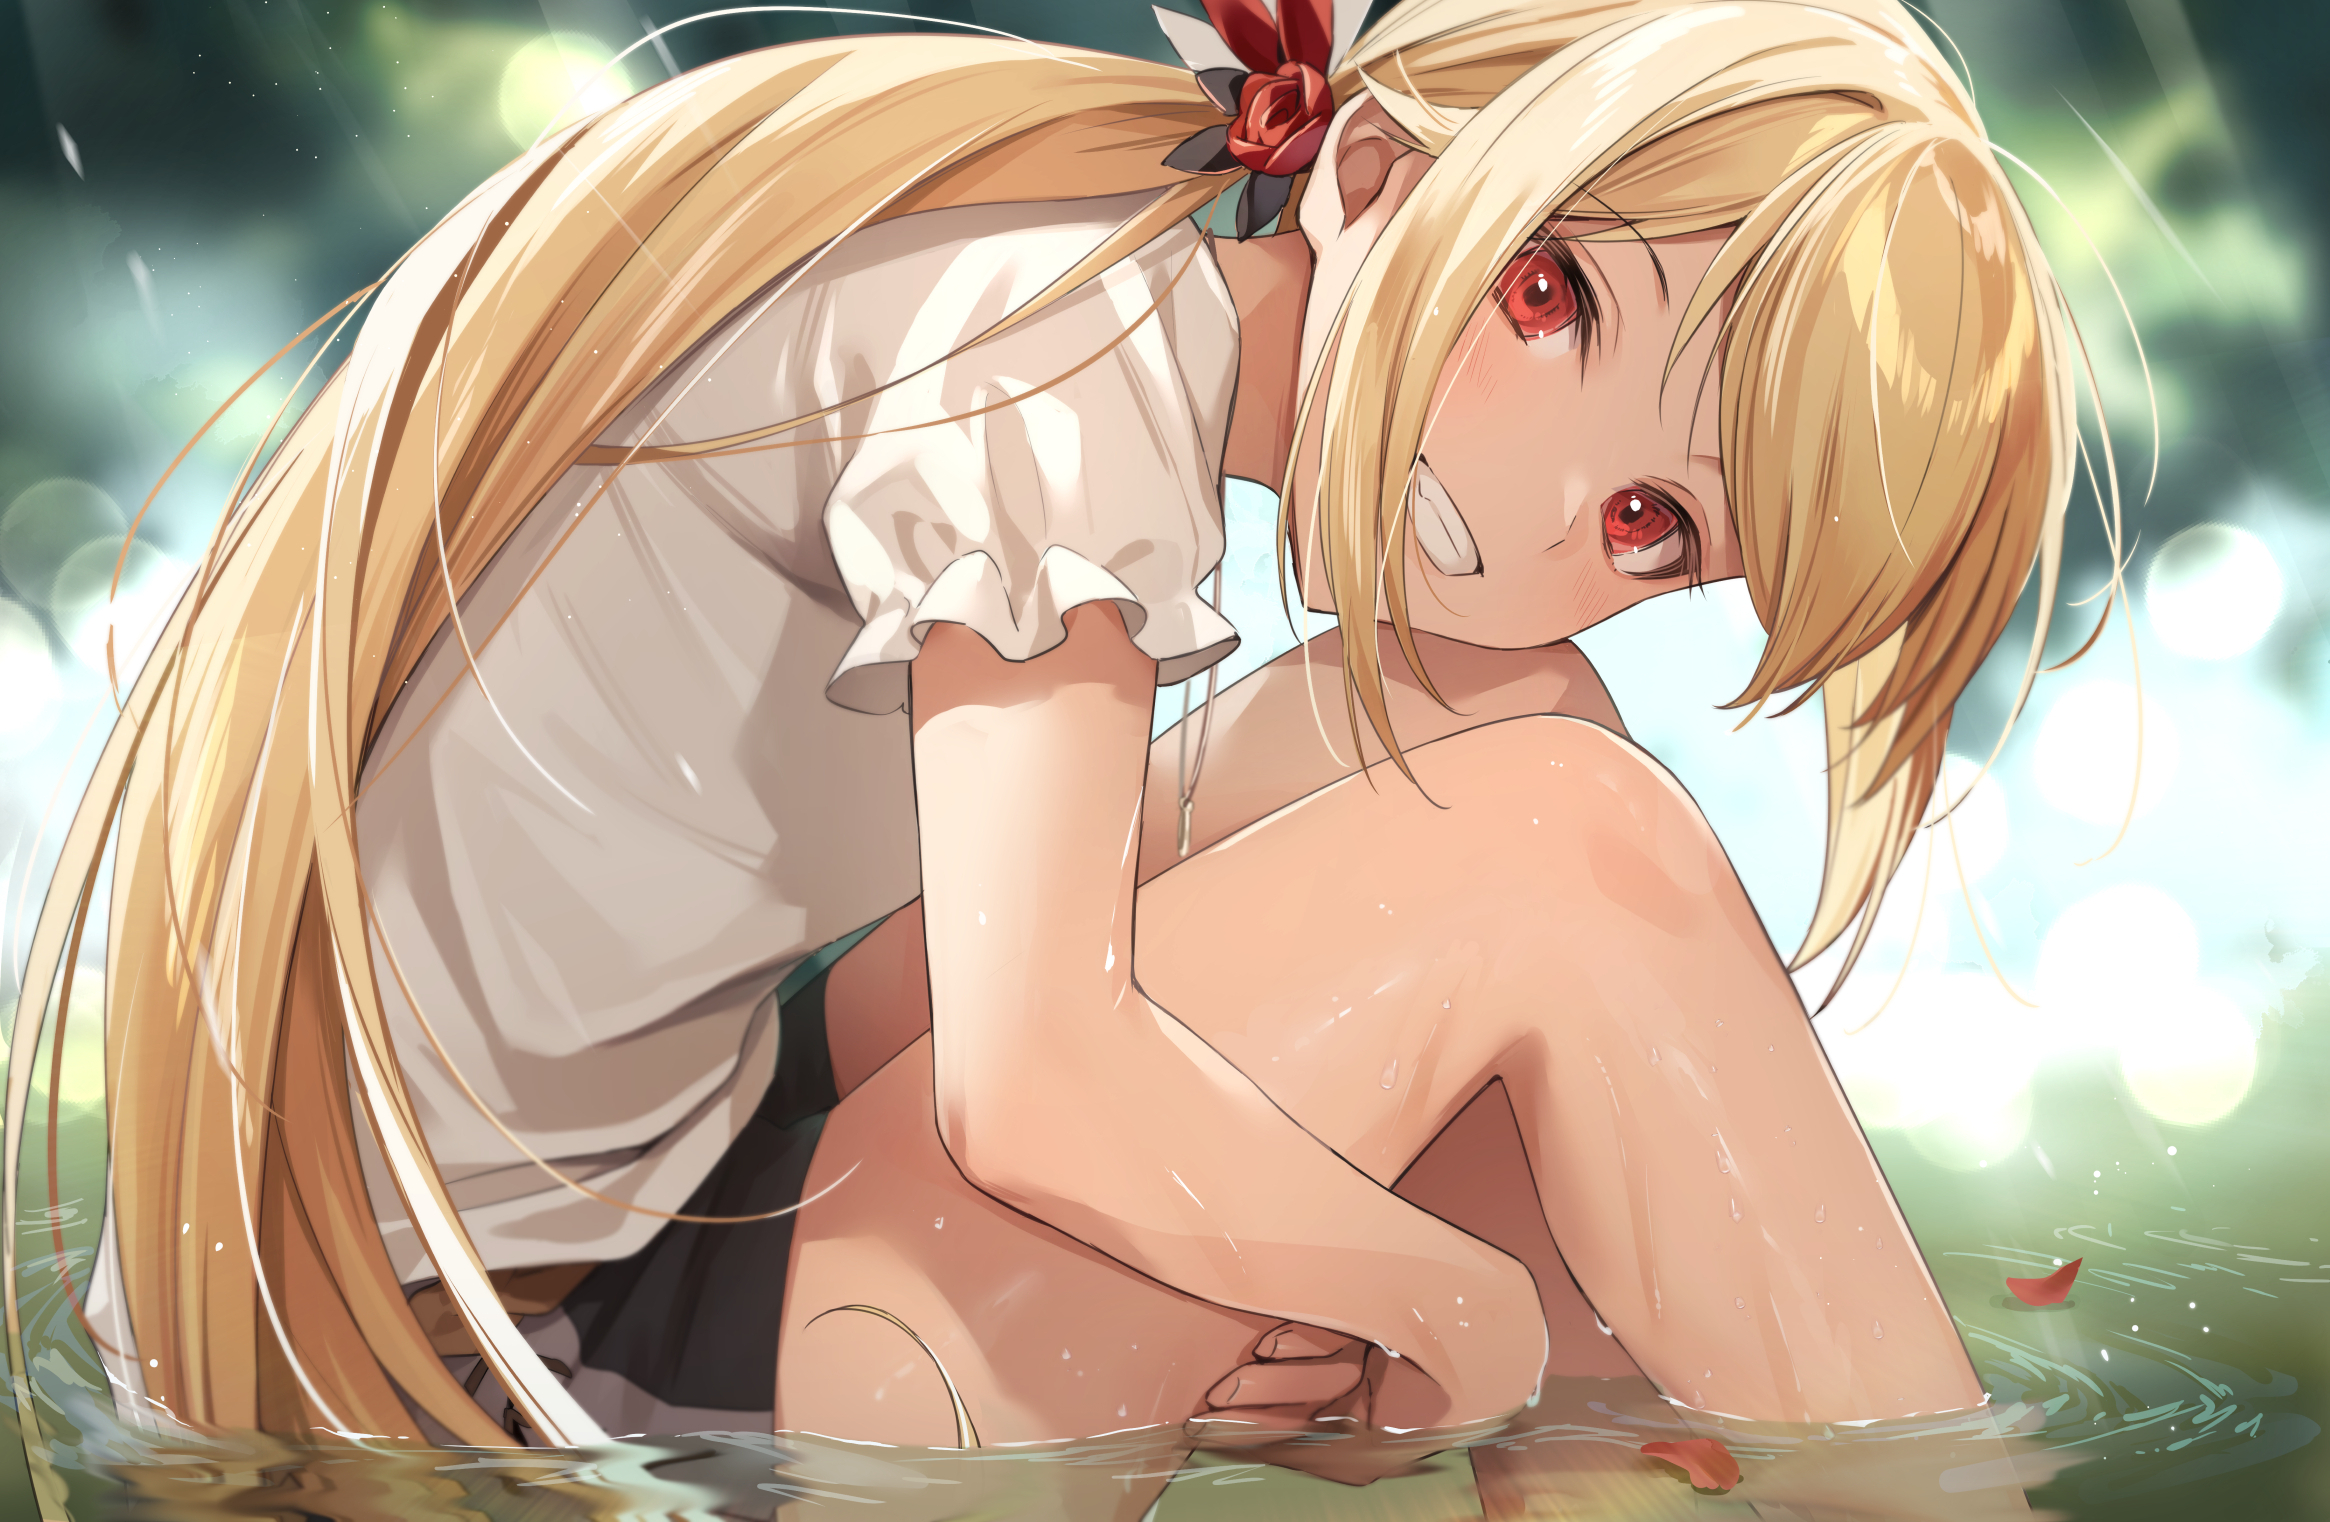 Anime Anime Girls Blonde Wet Water Legs Red Eyes Sitting Long Hair Grin Artwork Zattape 2330x1522